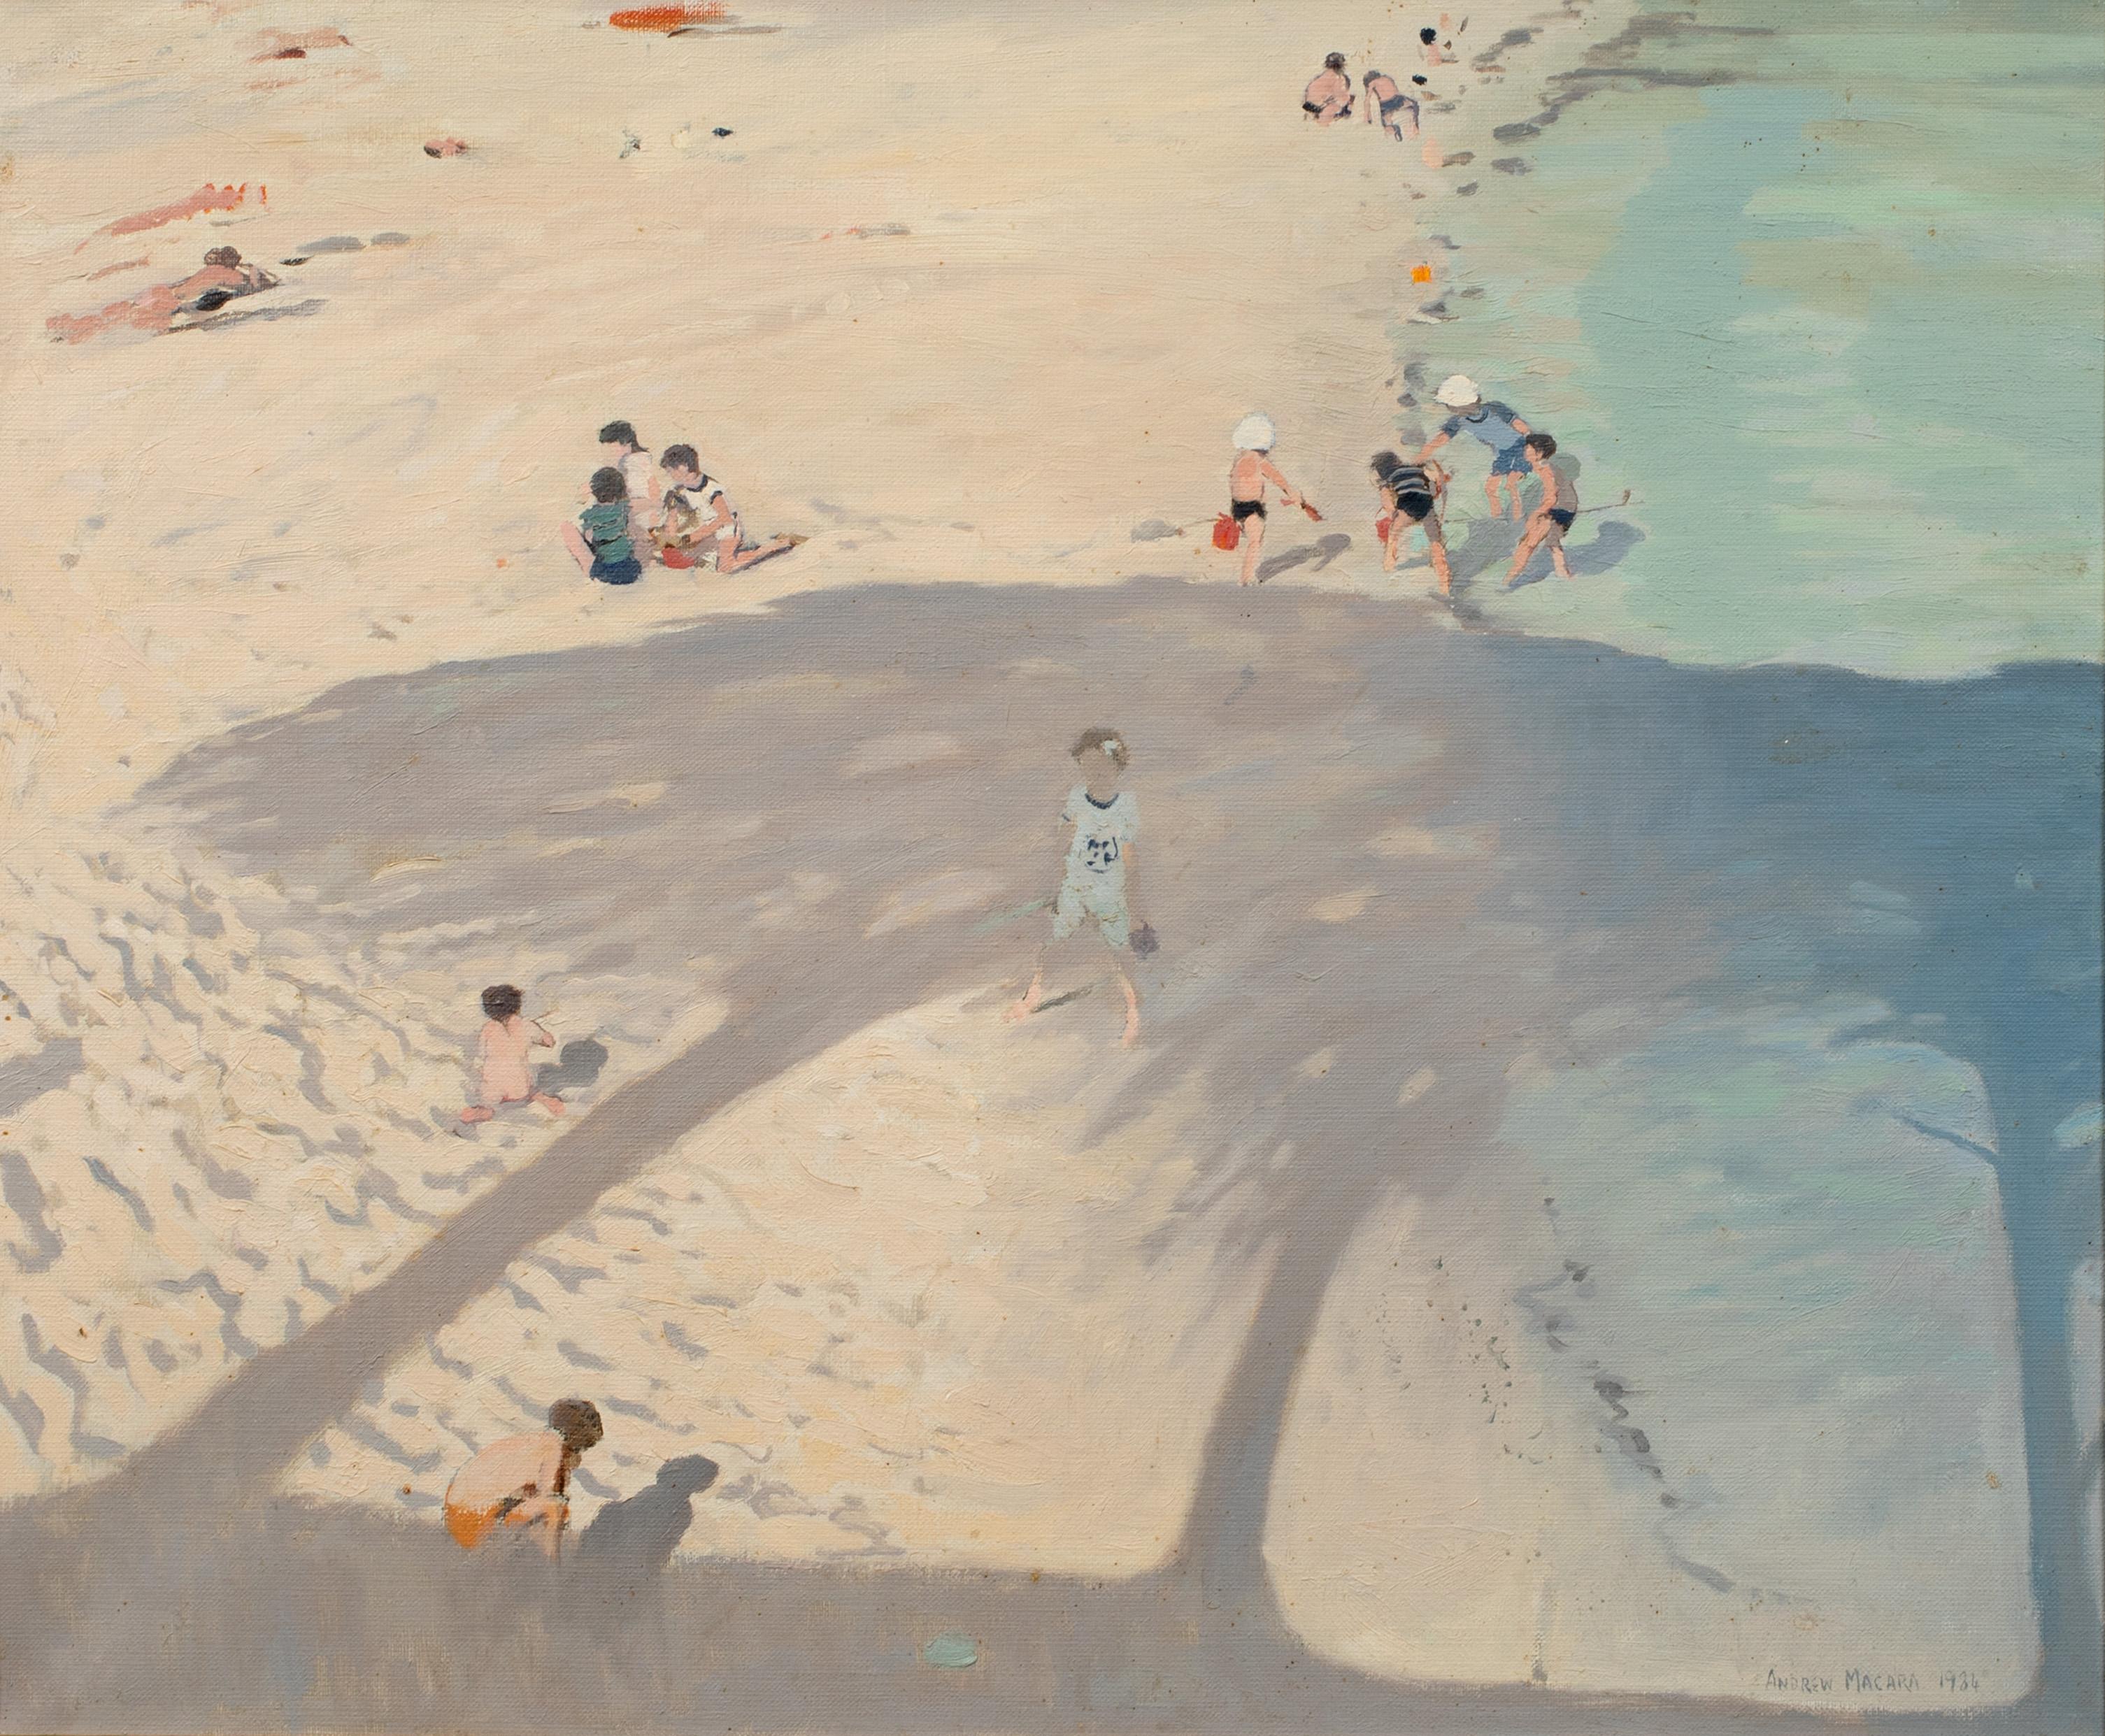 Beach Scene, 20th Century - Painting by Andrew Macara 